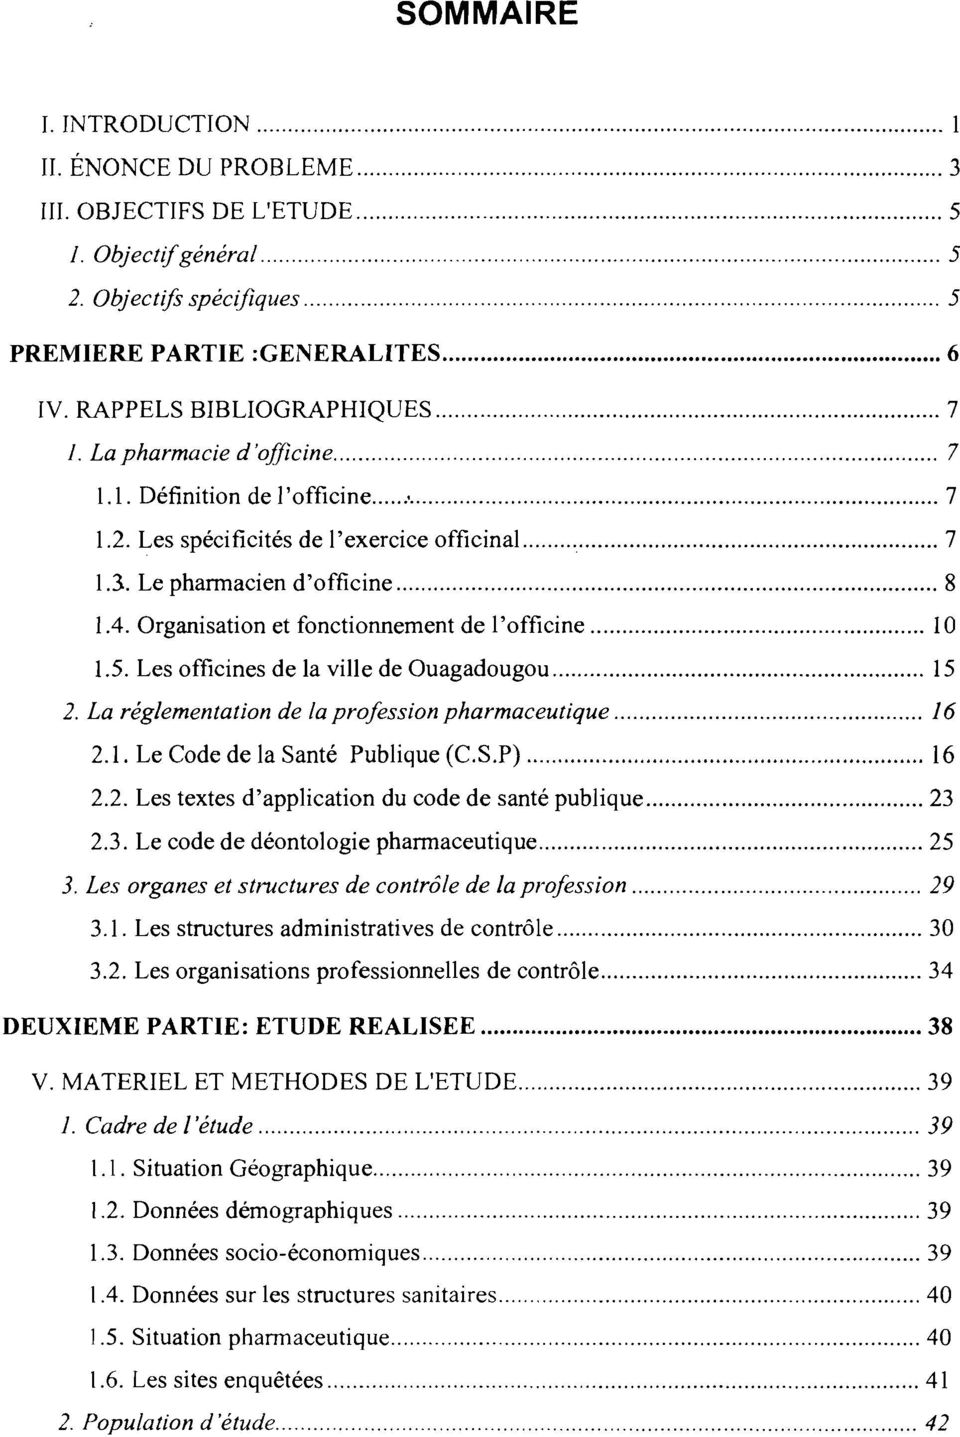 Les officines de la ville de Ouagadougou 15 2. La réglementation de la profession pharmaceutique 16 2.1. Le Code de la Santé Publique (C.S.P) 16 2.2. Les textes d'application du code de santé publique 23 2.